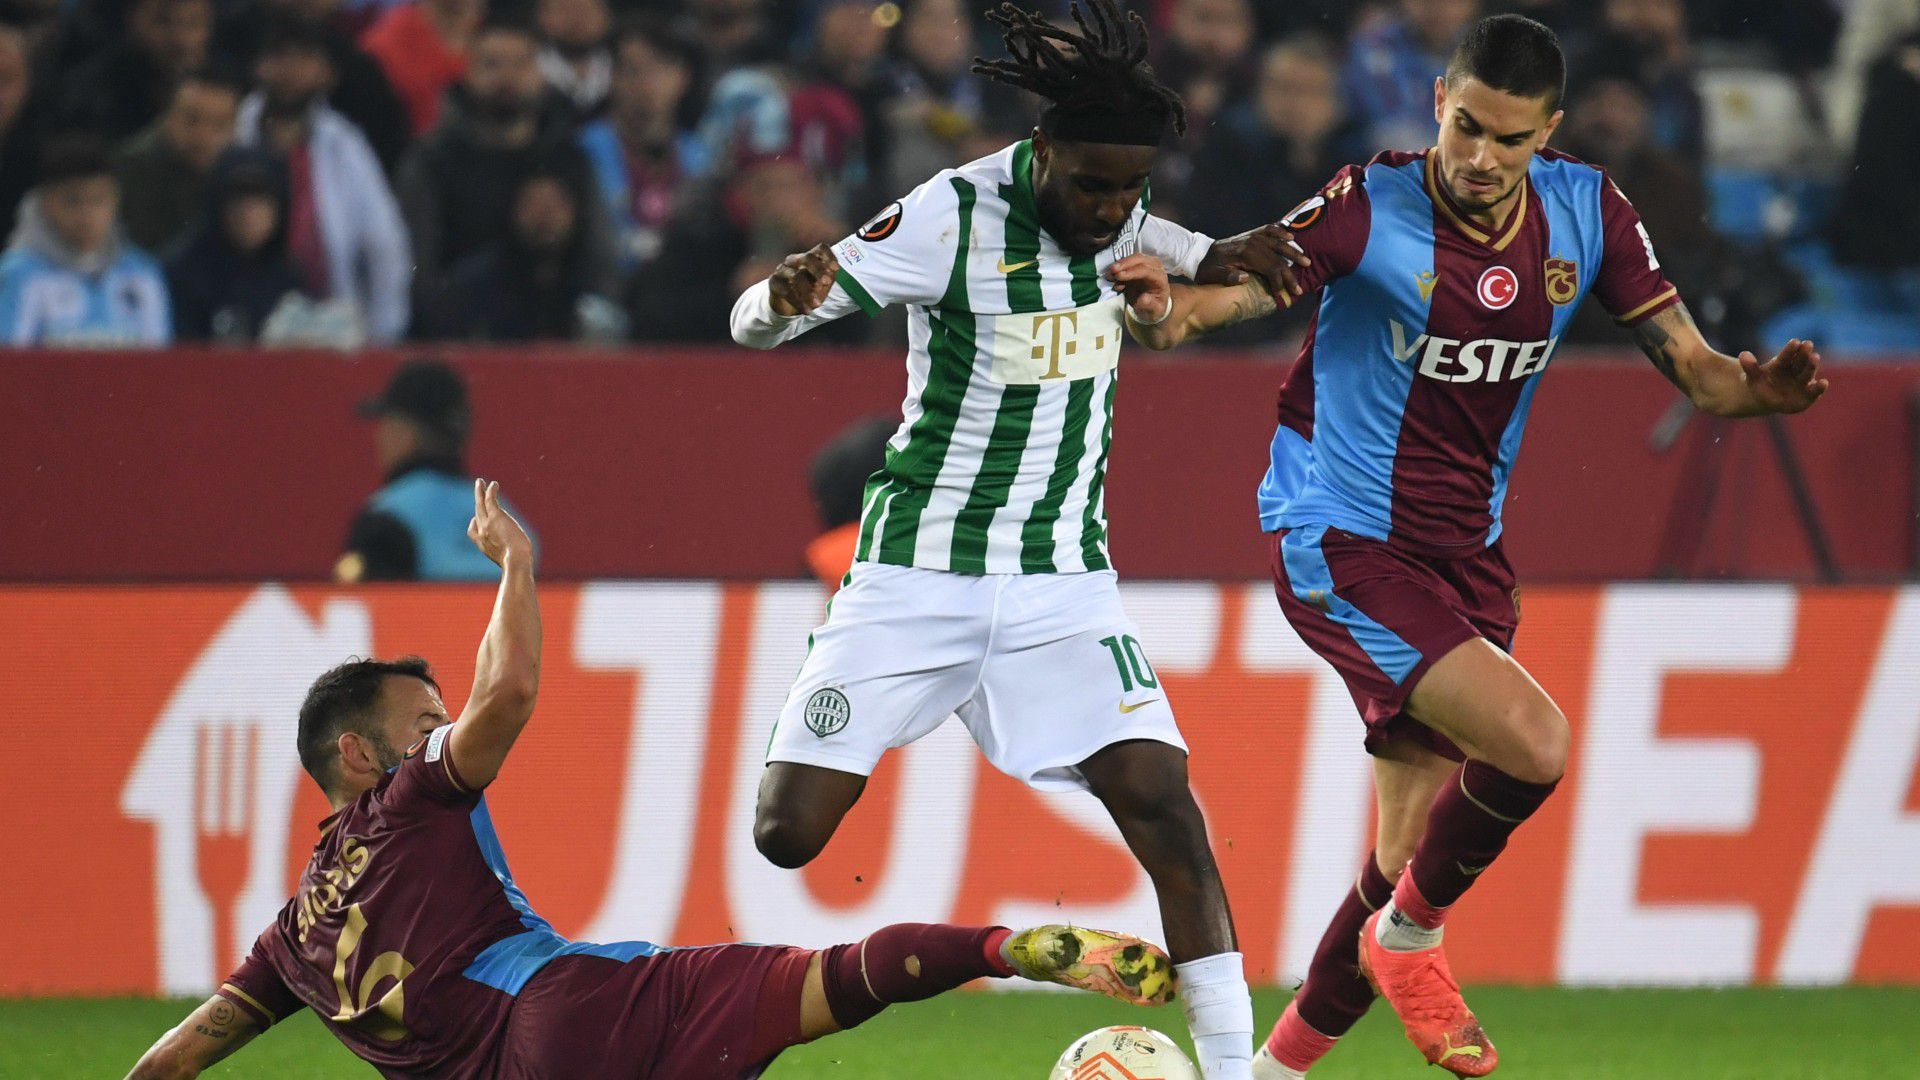 Bombagóllal nyert a Trabzonspor, ám a Fradi készülhet a tavaszi El-folytatásra